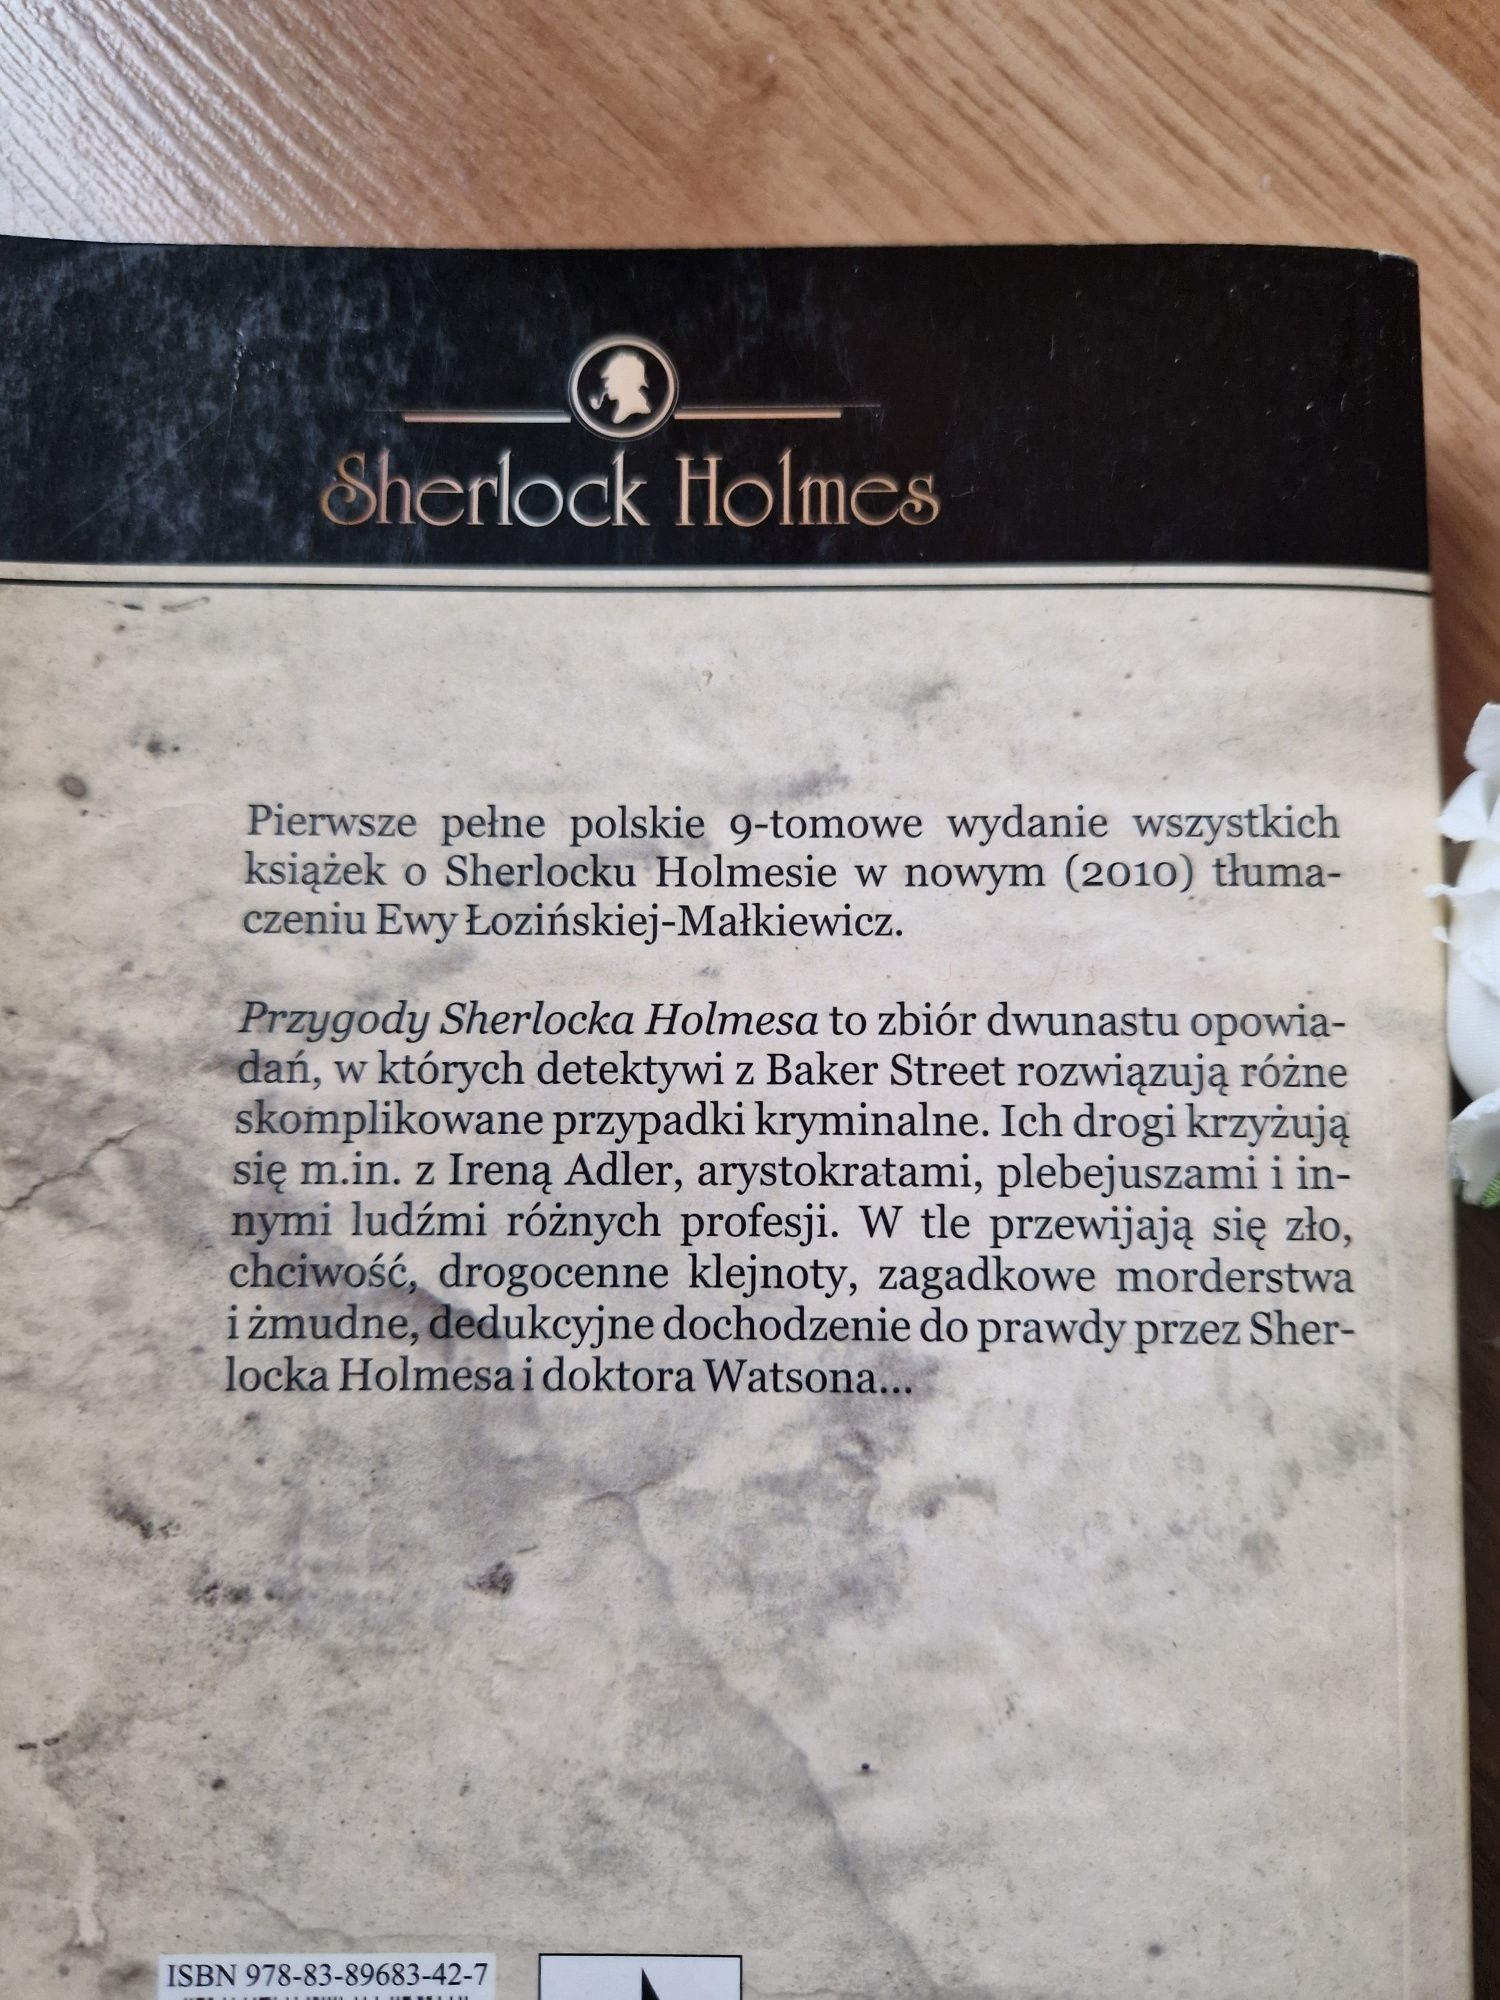 Książka Przygody Sherlocka Holmesa